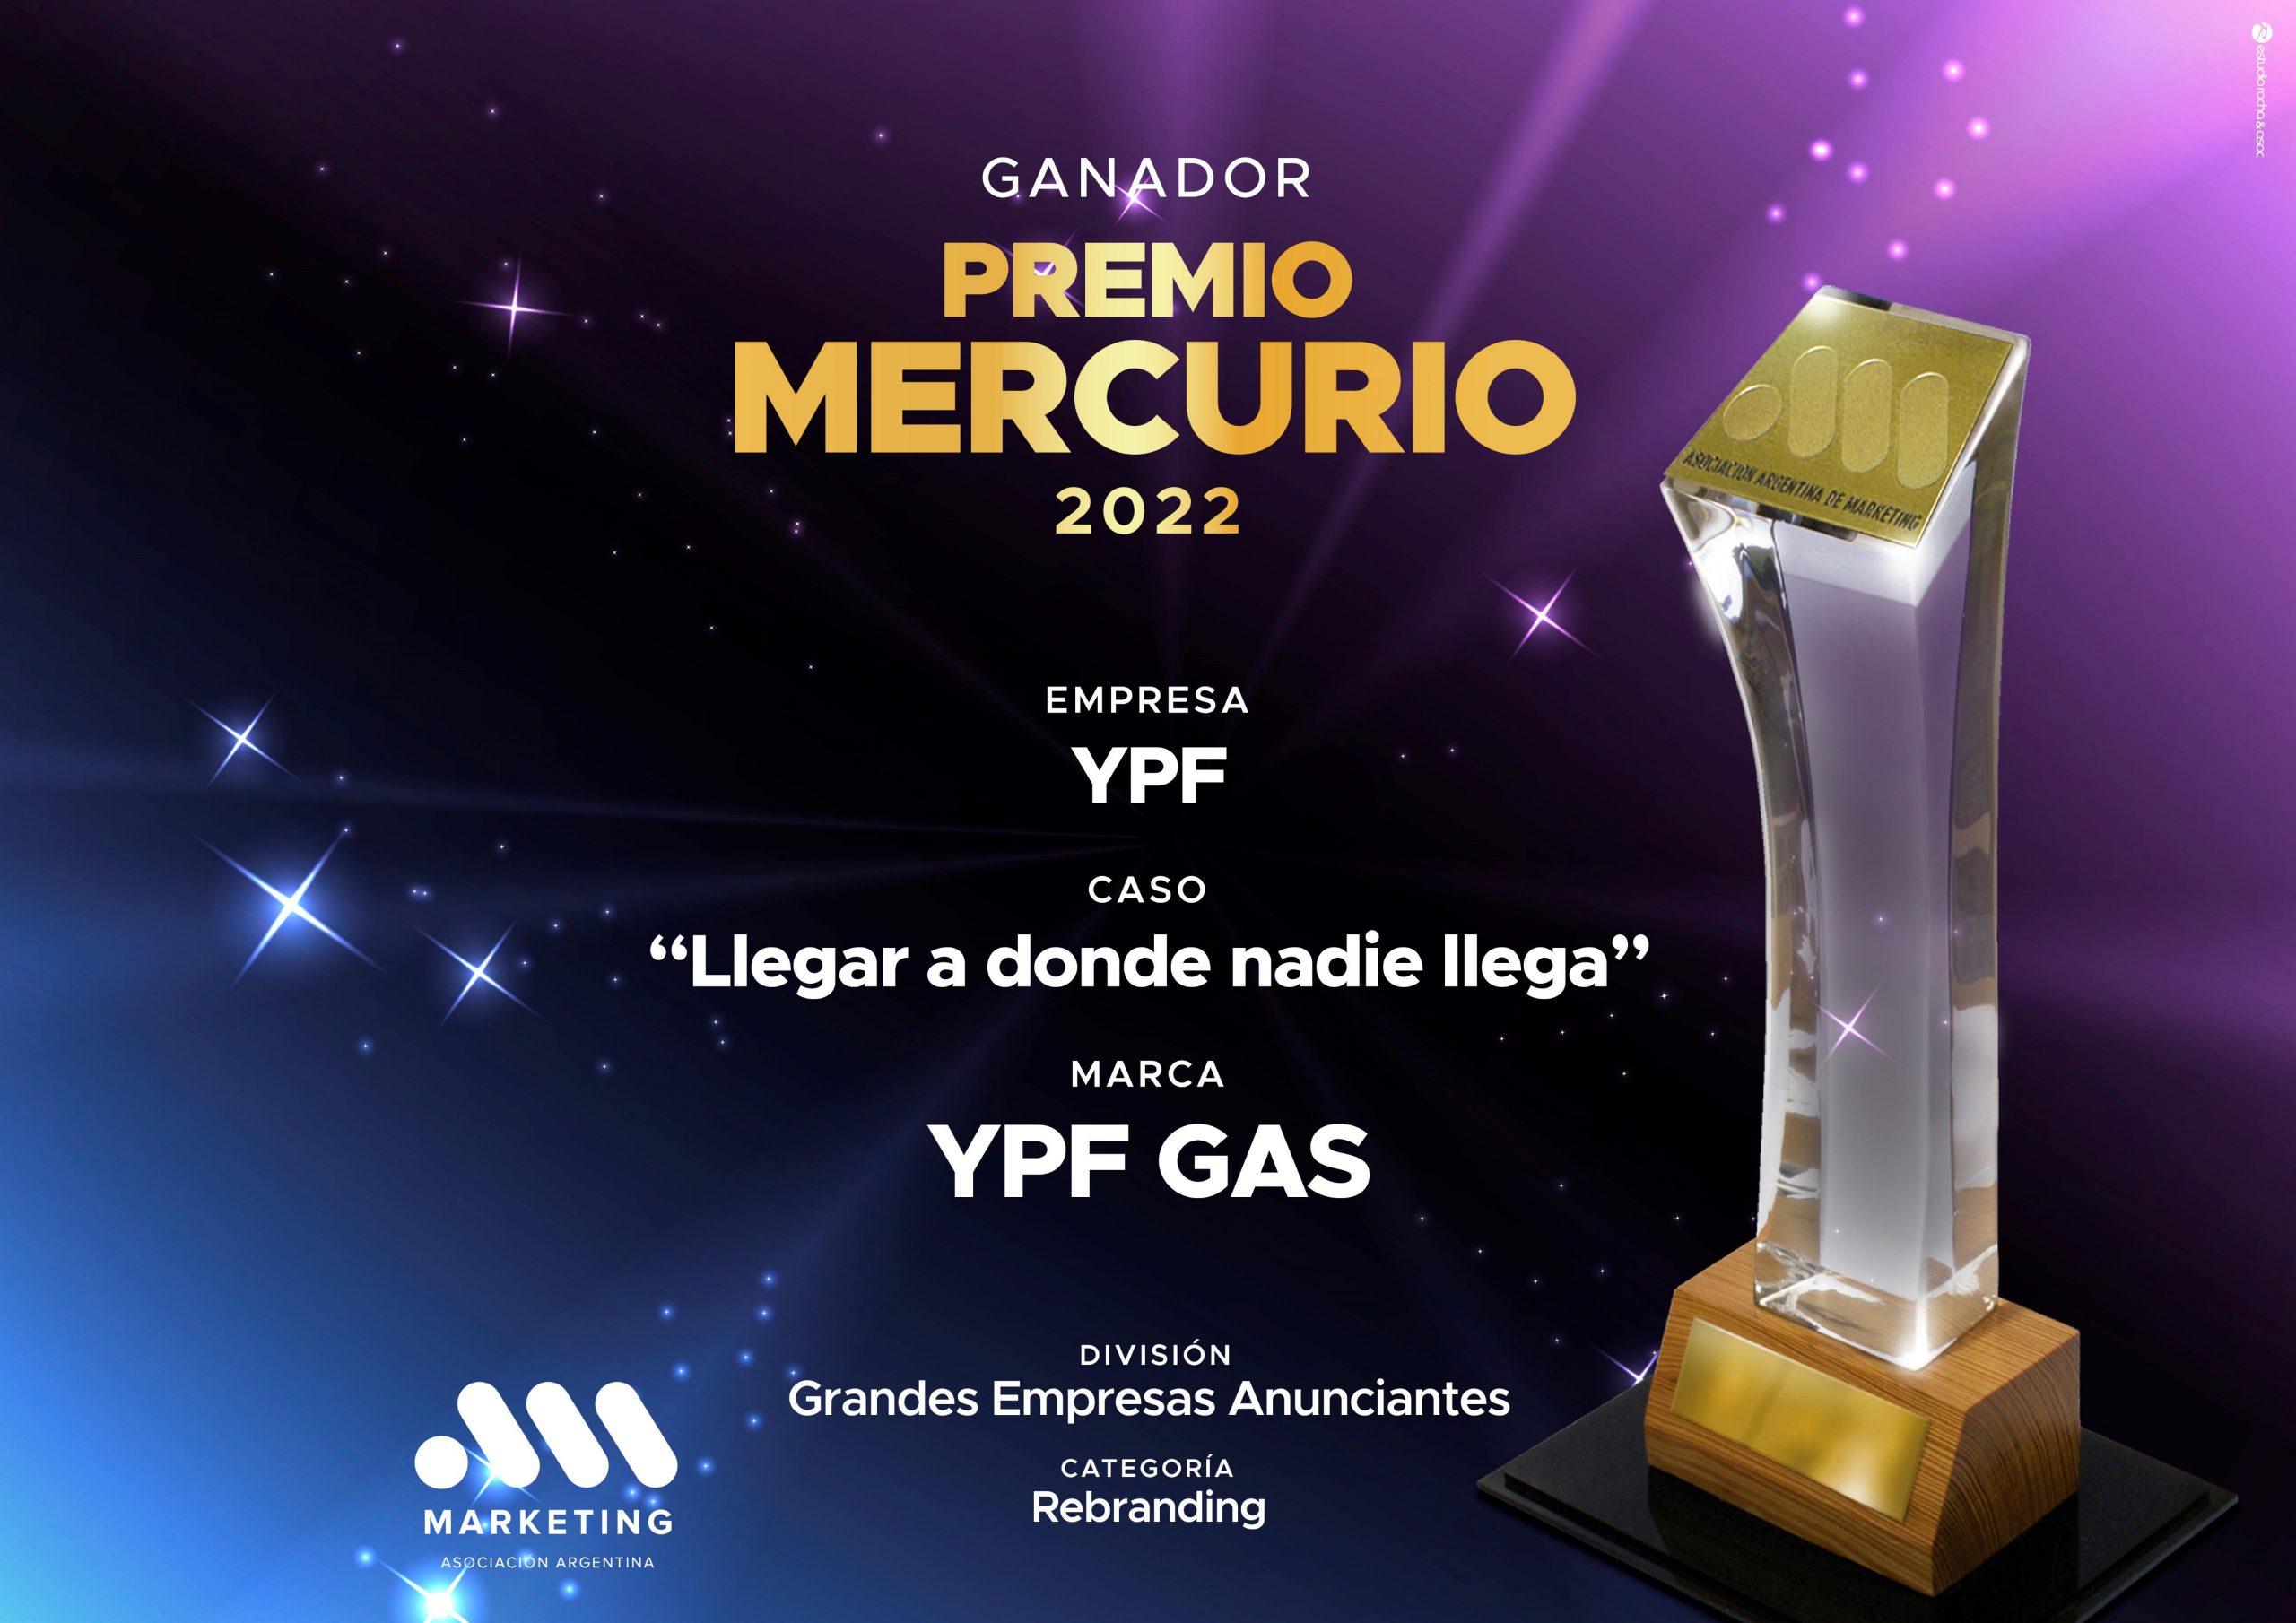 ¡Felicitaciones a YPF Gas, ganador del Premio Mercurio!